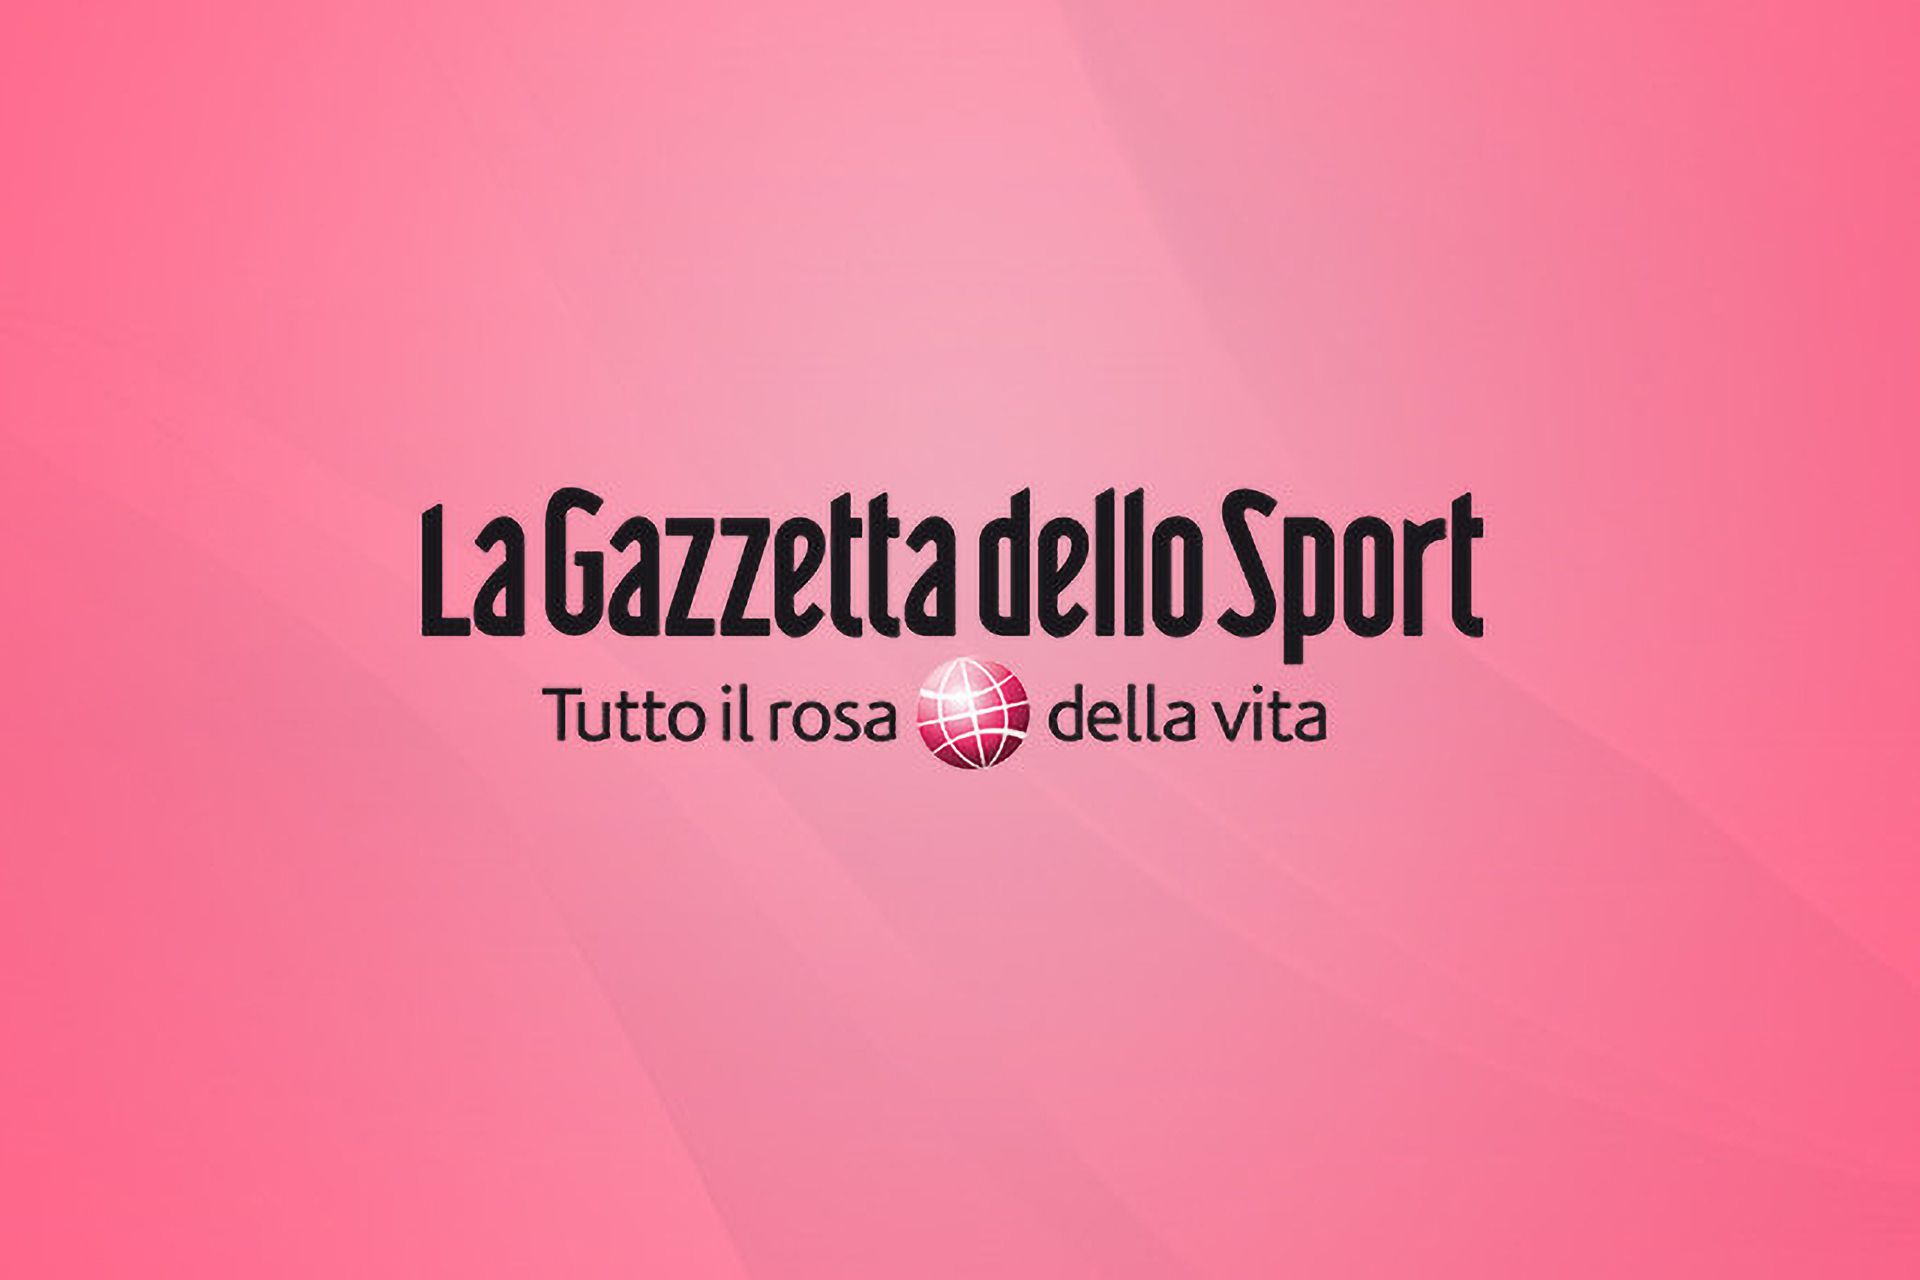 GazzettaSport_1920x1280_en